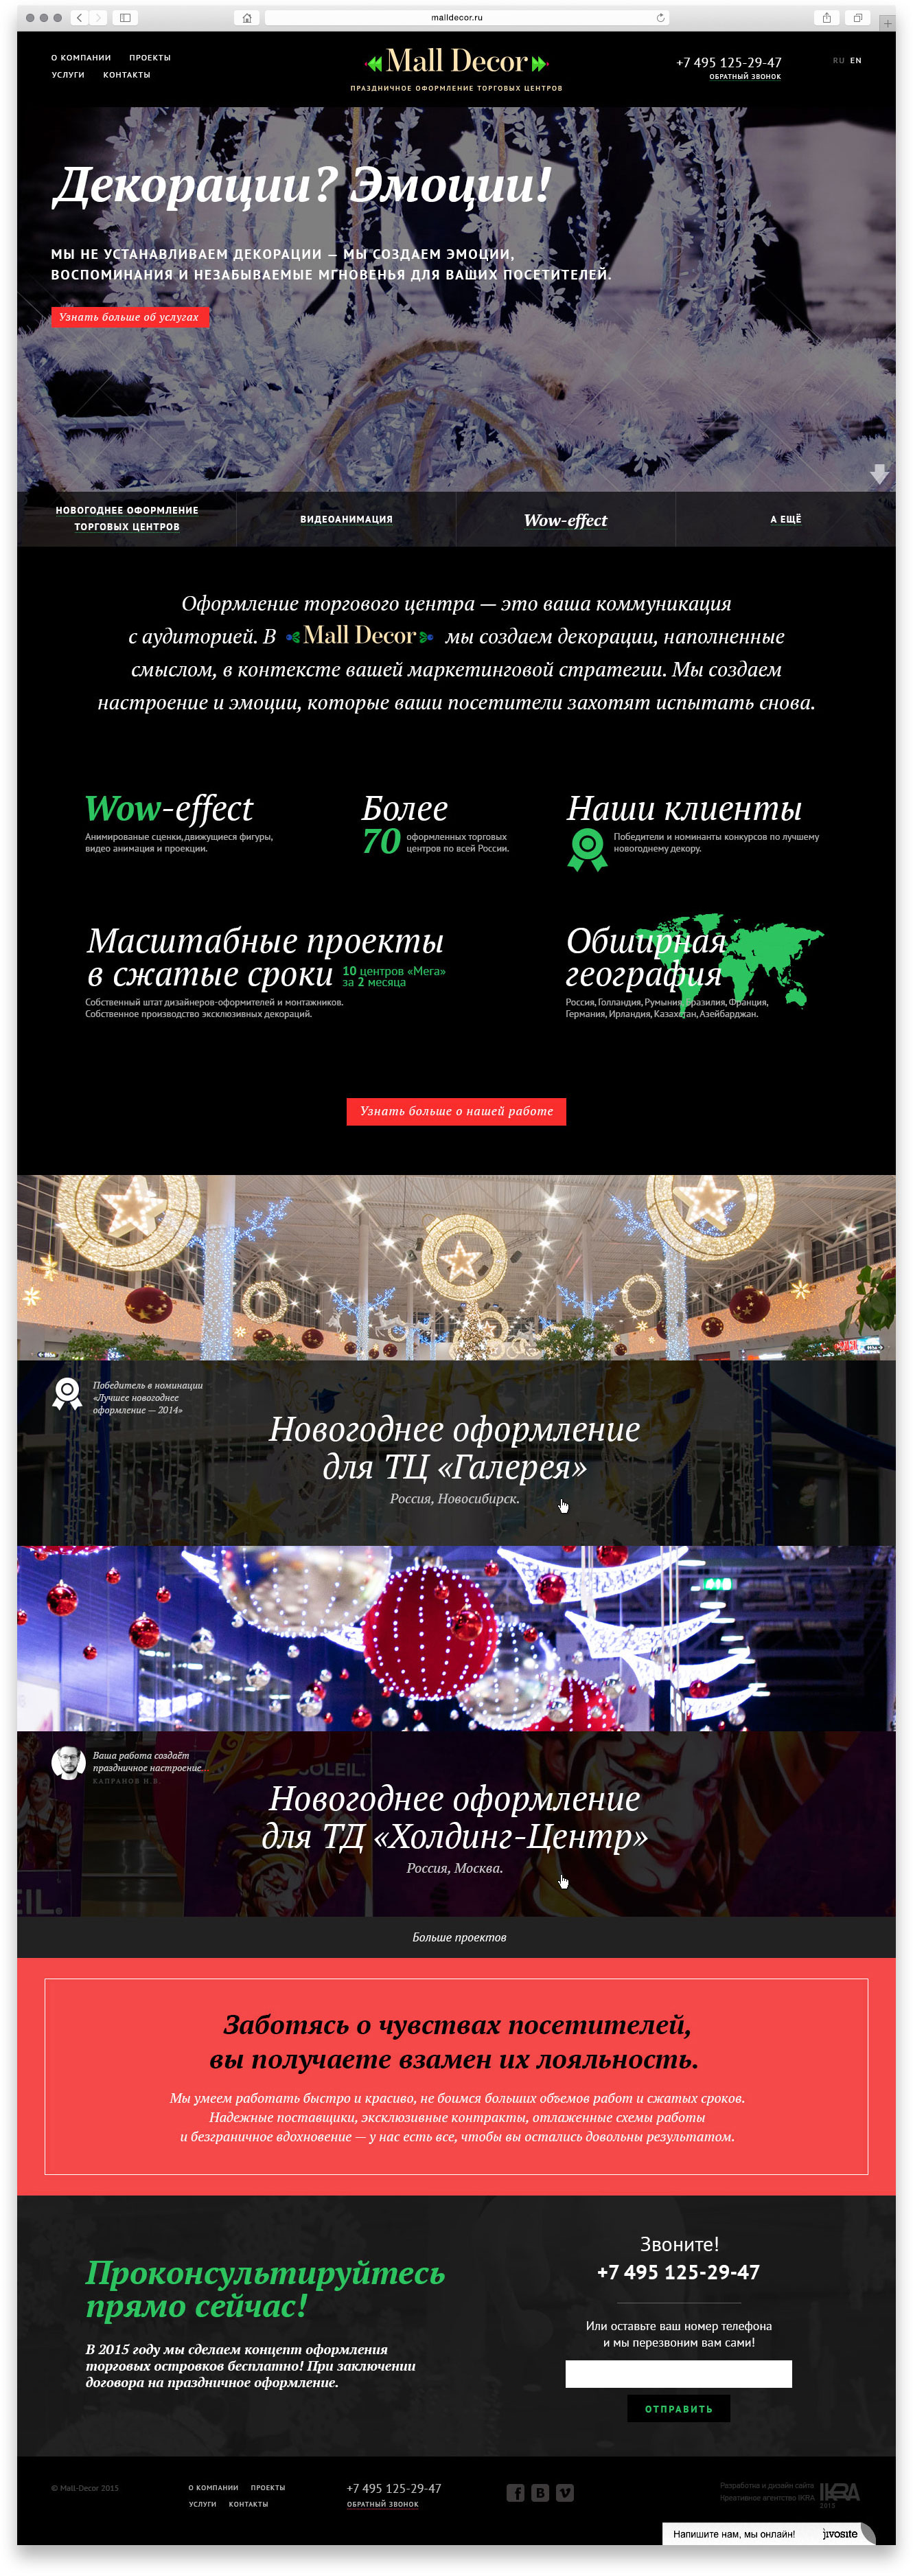 Создание дизайна сайта компании по оформлению торговых центров Malldecor